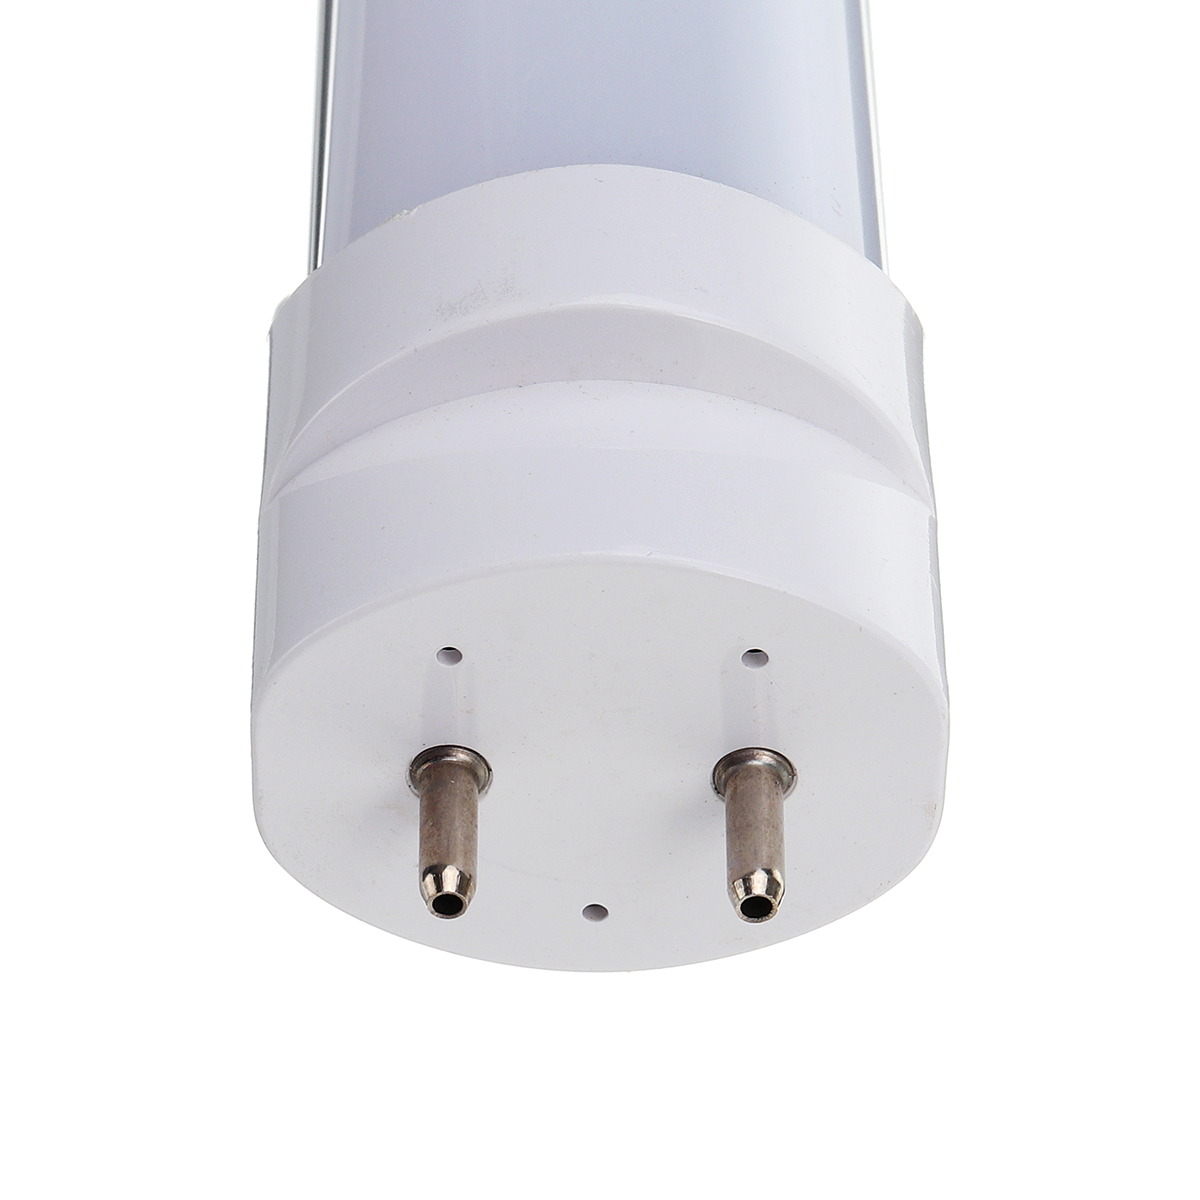 10PCS T8 4ft 18W 2835 Cool White 88 LED Tube Light Fluorescent Bulb for Indoor Home Use AC85-265V